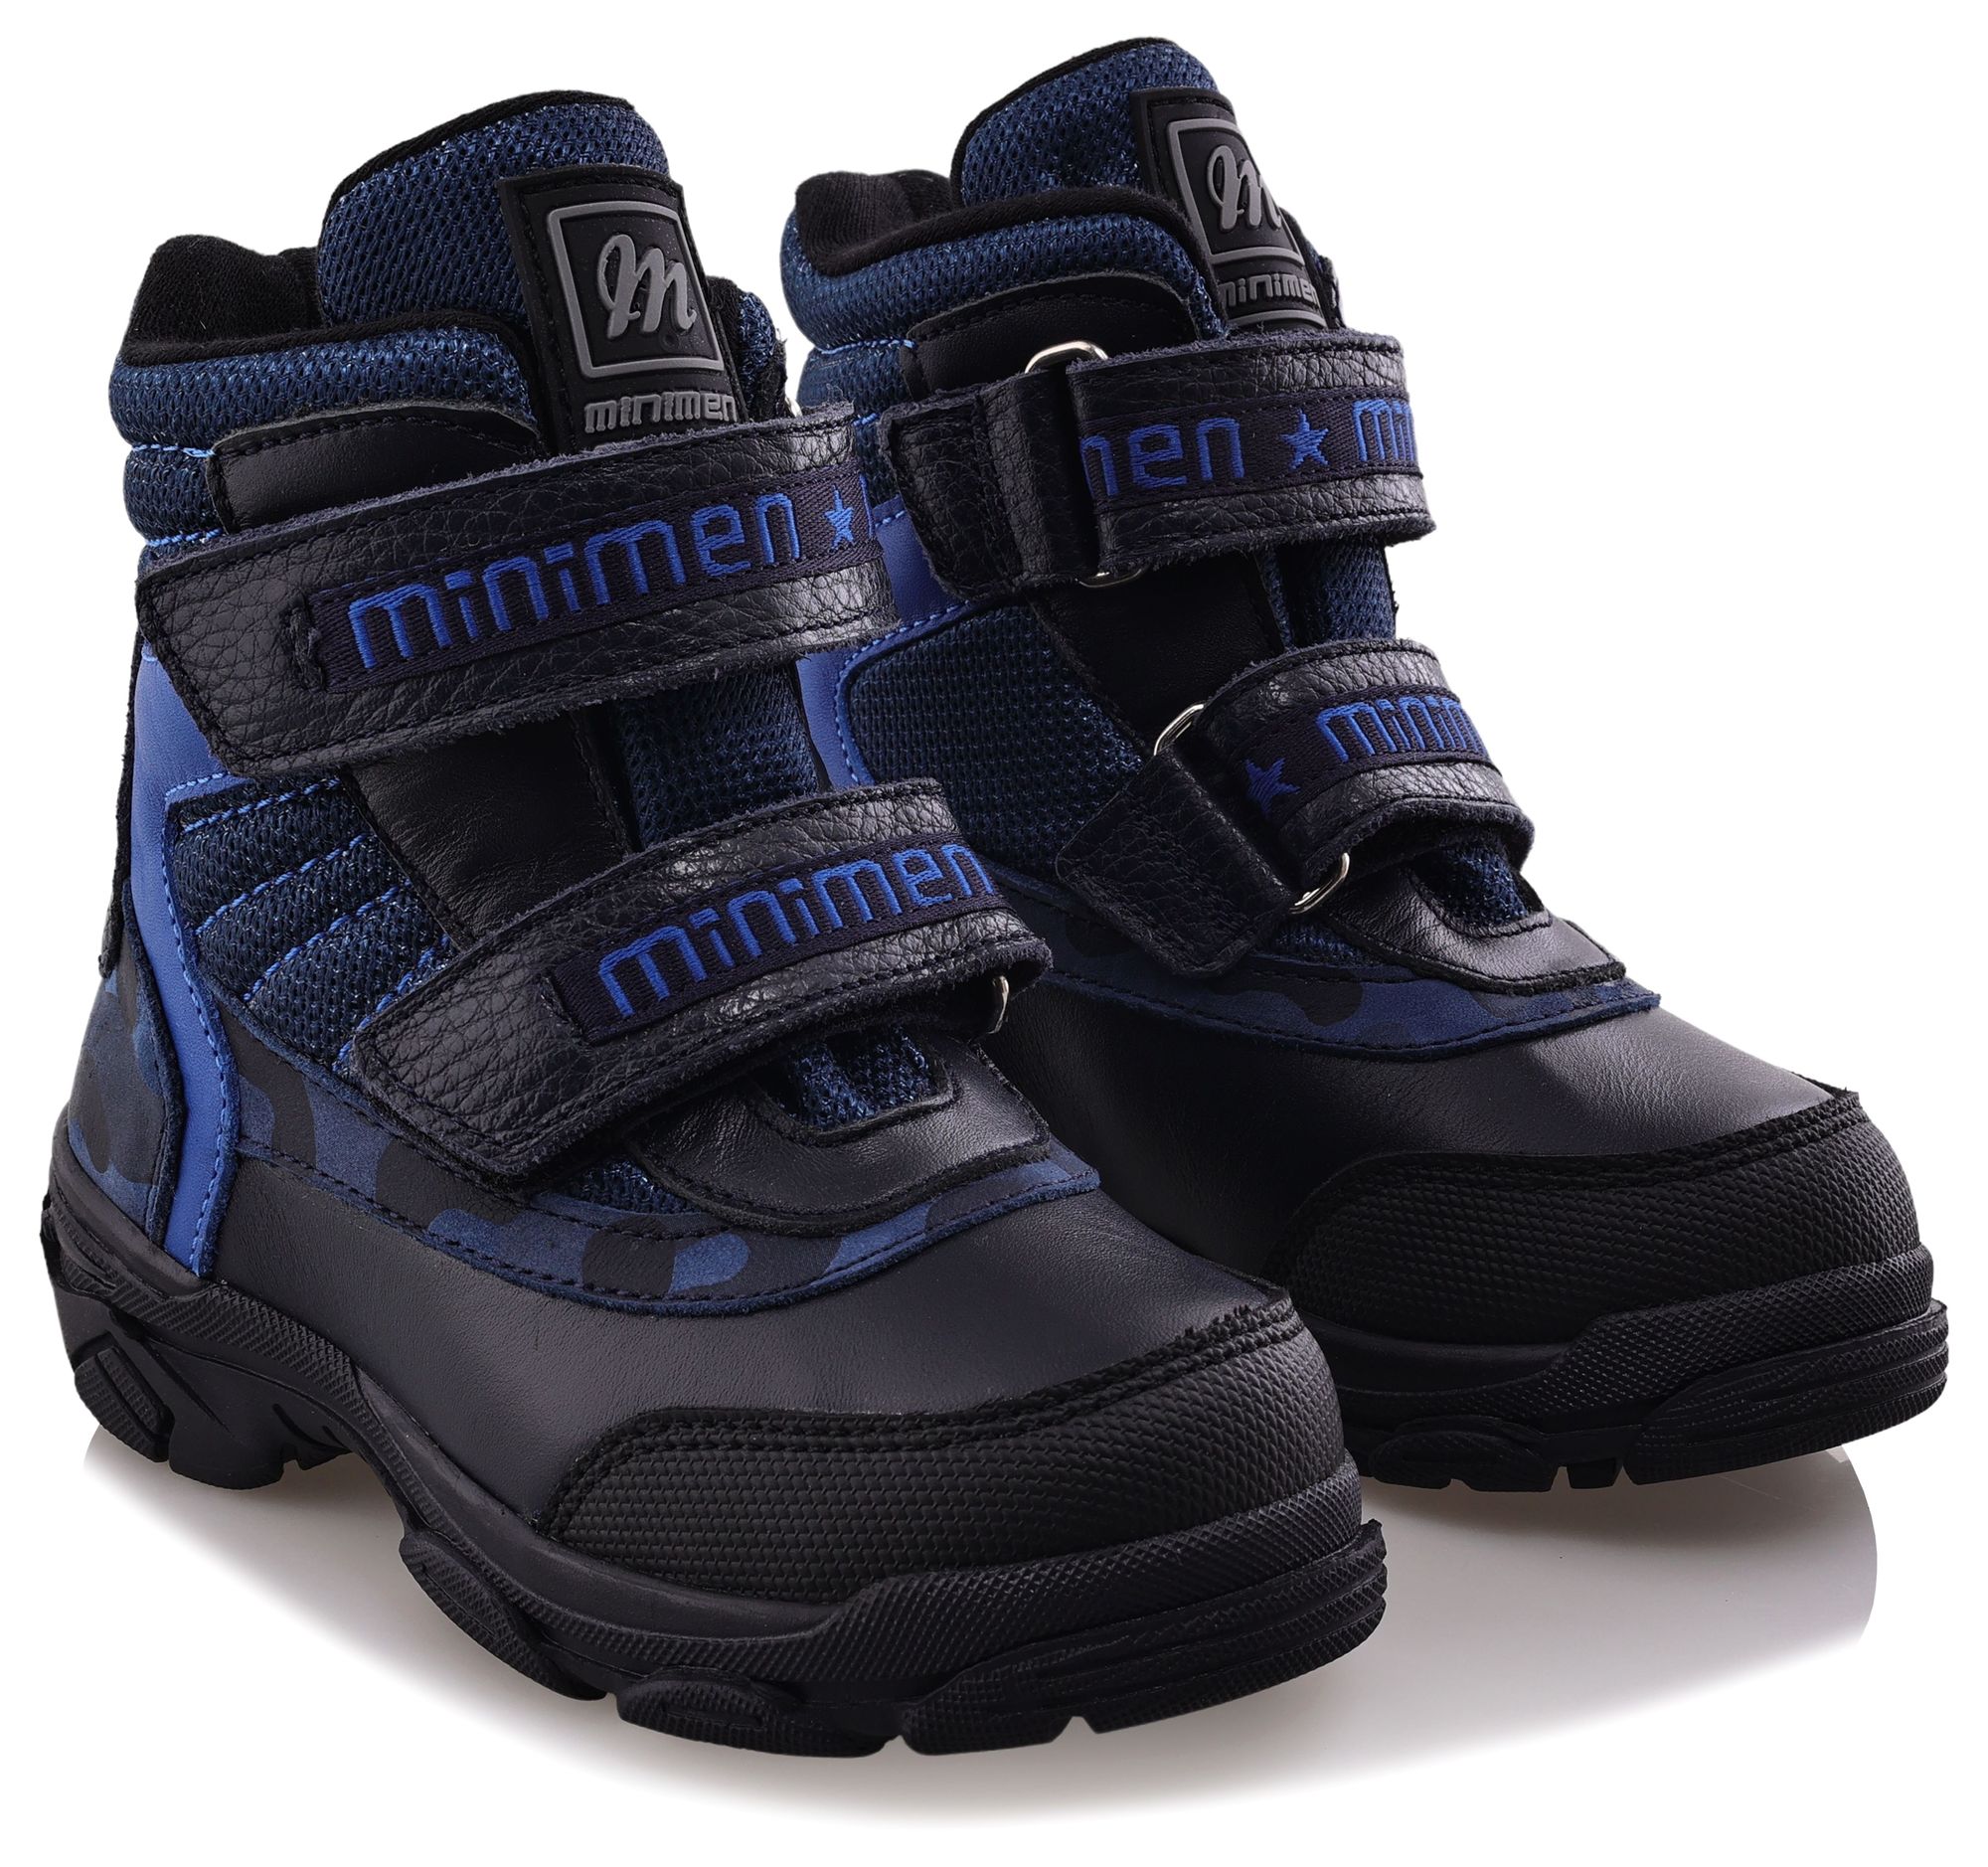 Ботинки Minimen для мальчиков, тёмно-синие, размер 27, 2655-53-23B-02